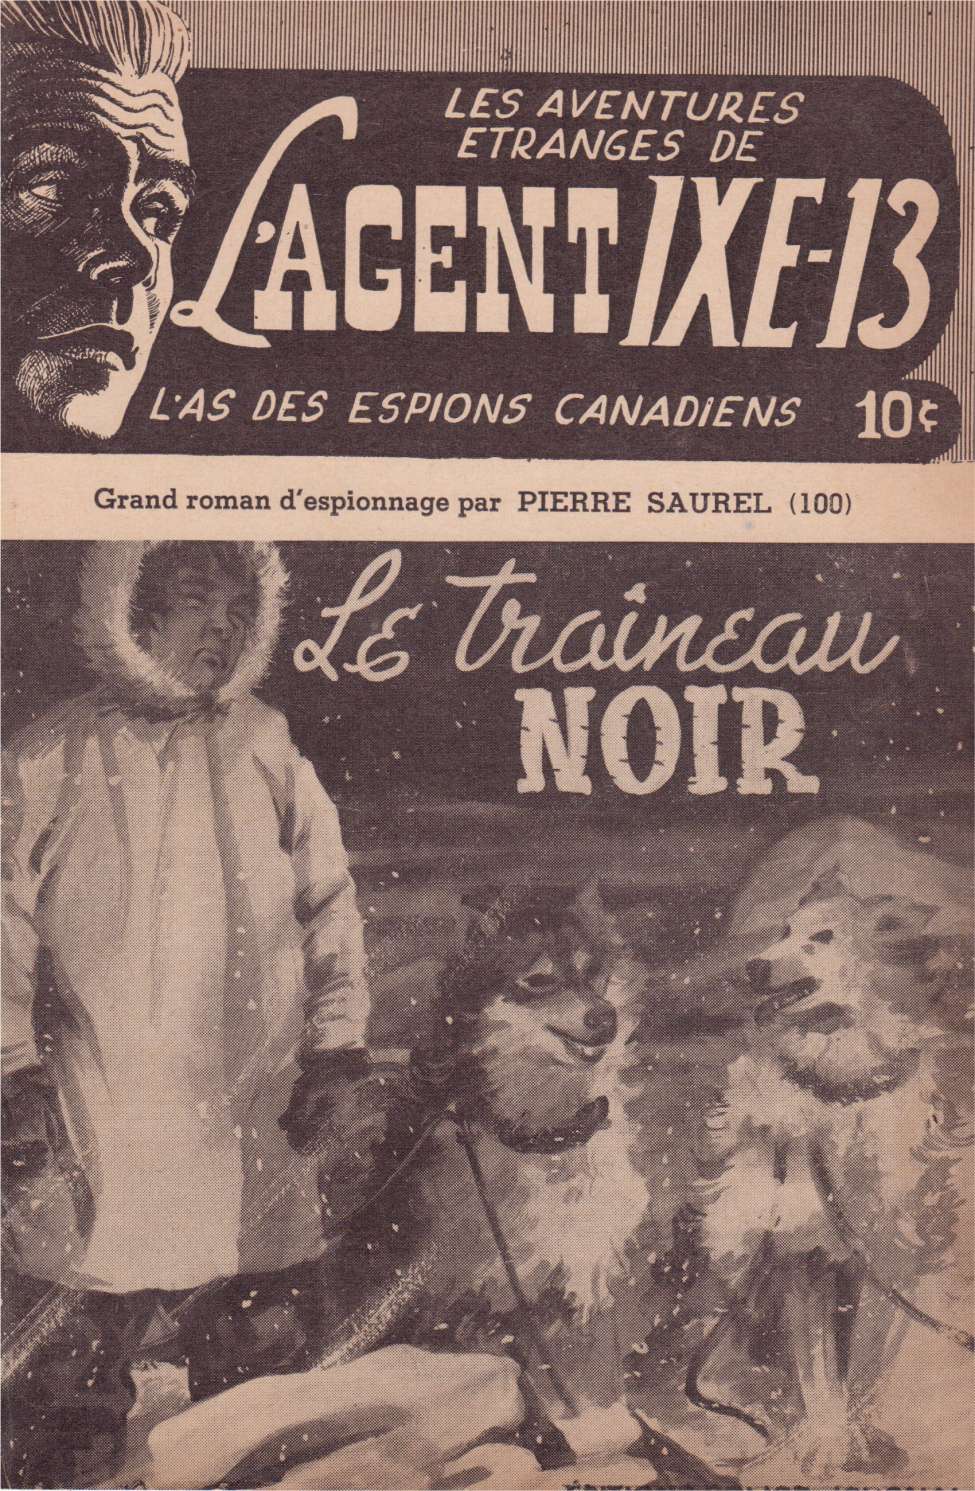 Comic Book Cover For L'Agent IXE-13 v2 100 - Le traîneau noir